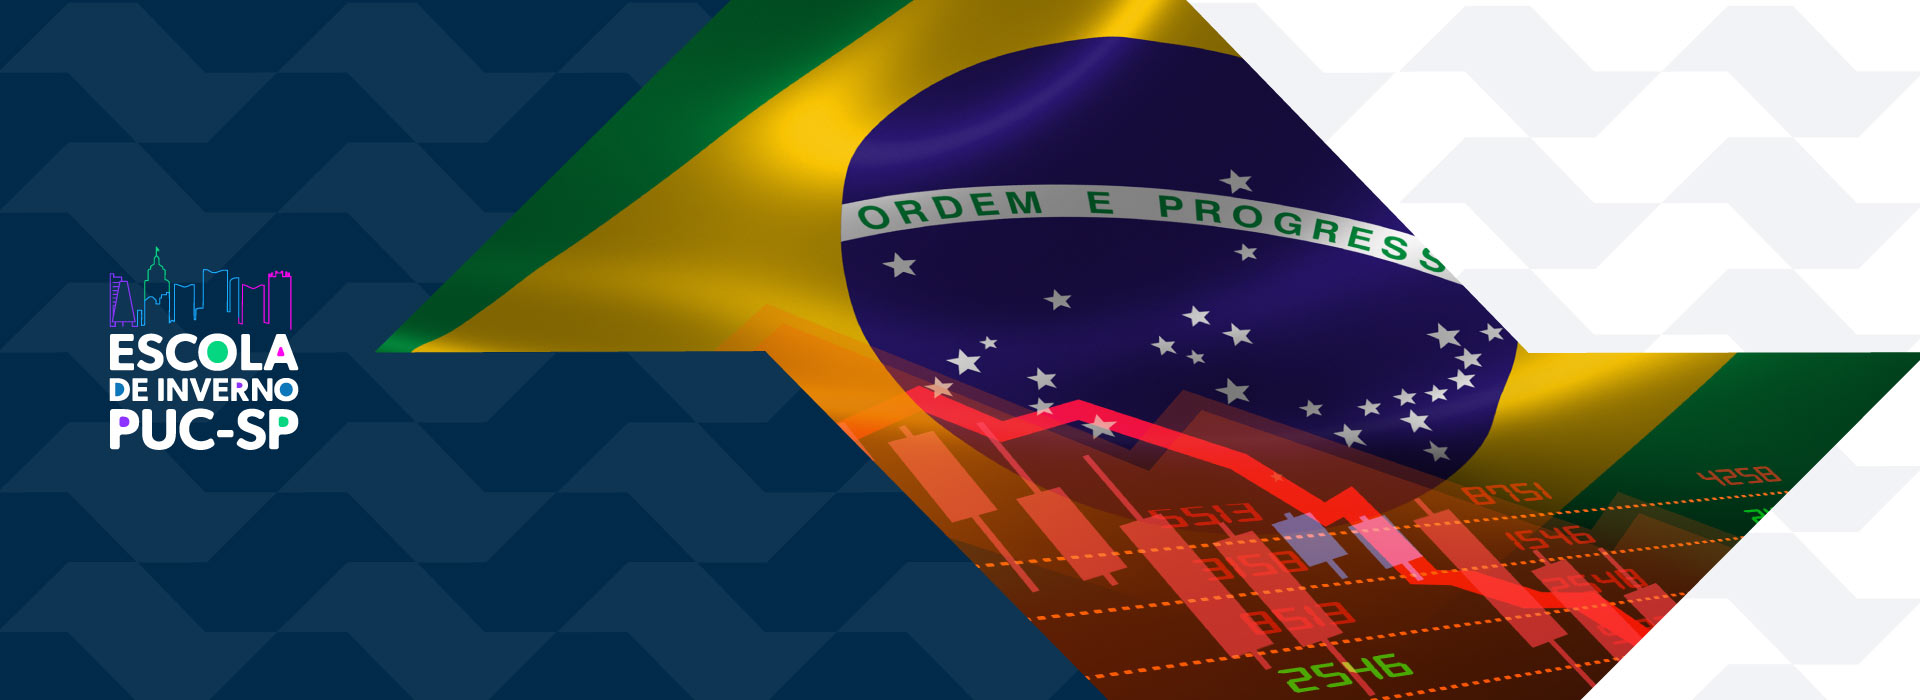 Imagem mostra logo da escola de inverno e montagem fotográfica entre bandeira do brasil e gráfico financeiro